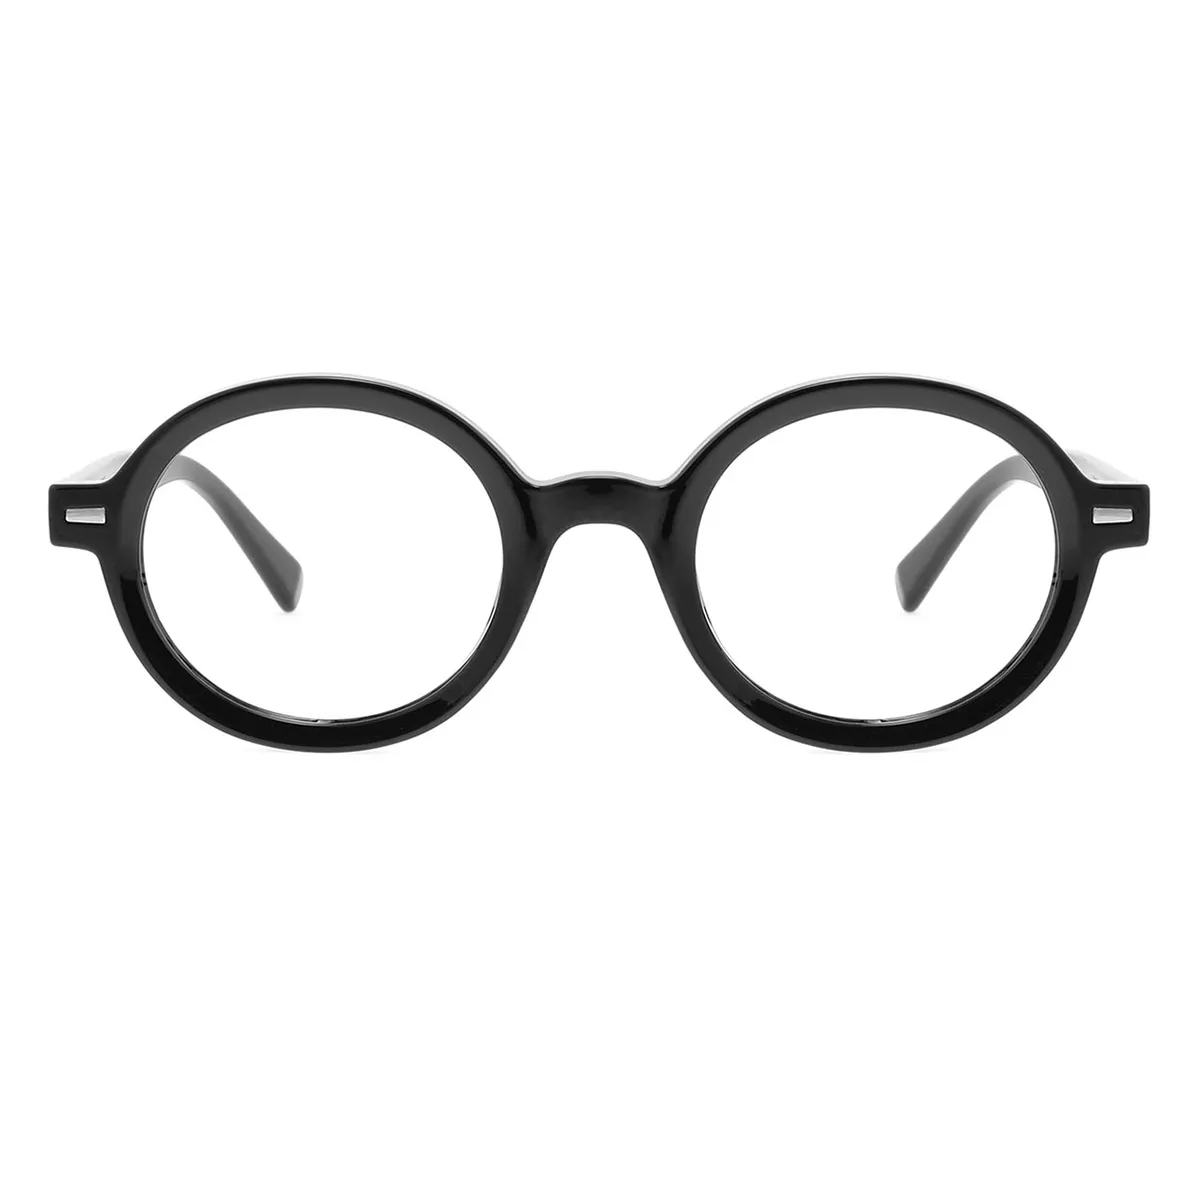 Ashplant - Round Black Reading glasses for Men & Women